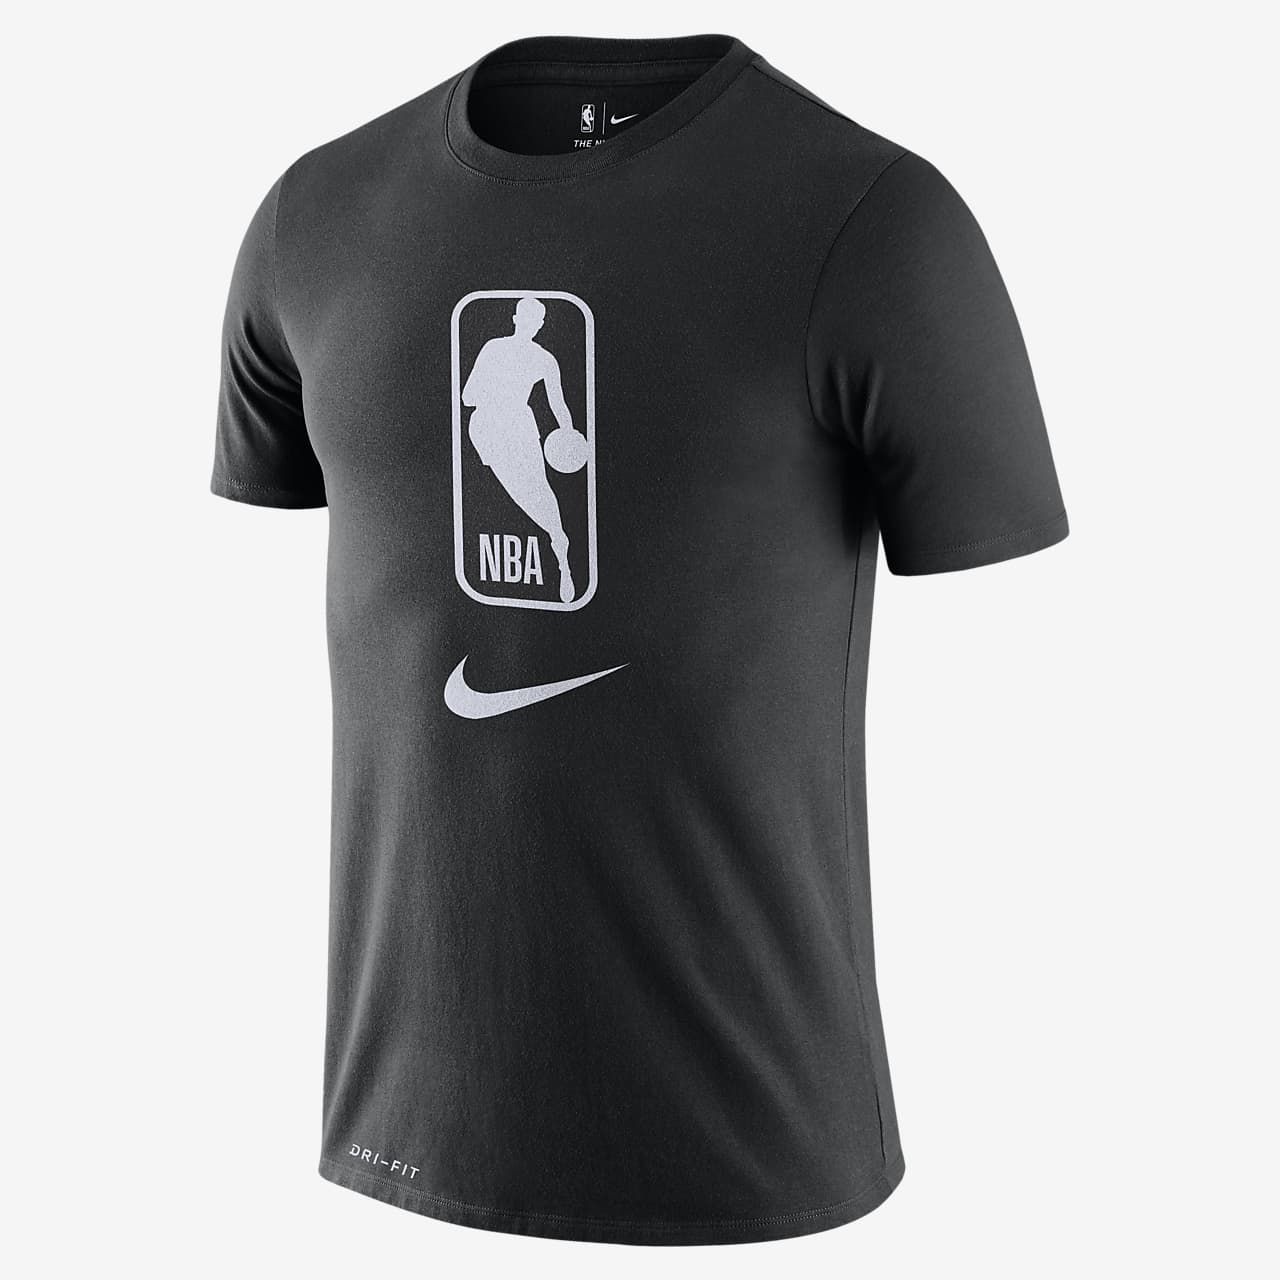 Team 31 Camiseta Nike Dri-FIT de NBA - Hombre.